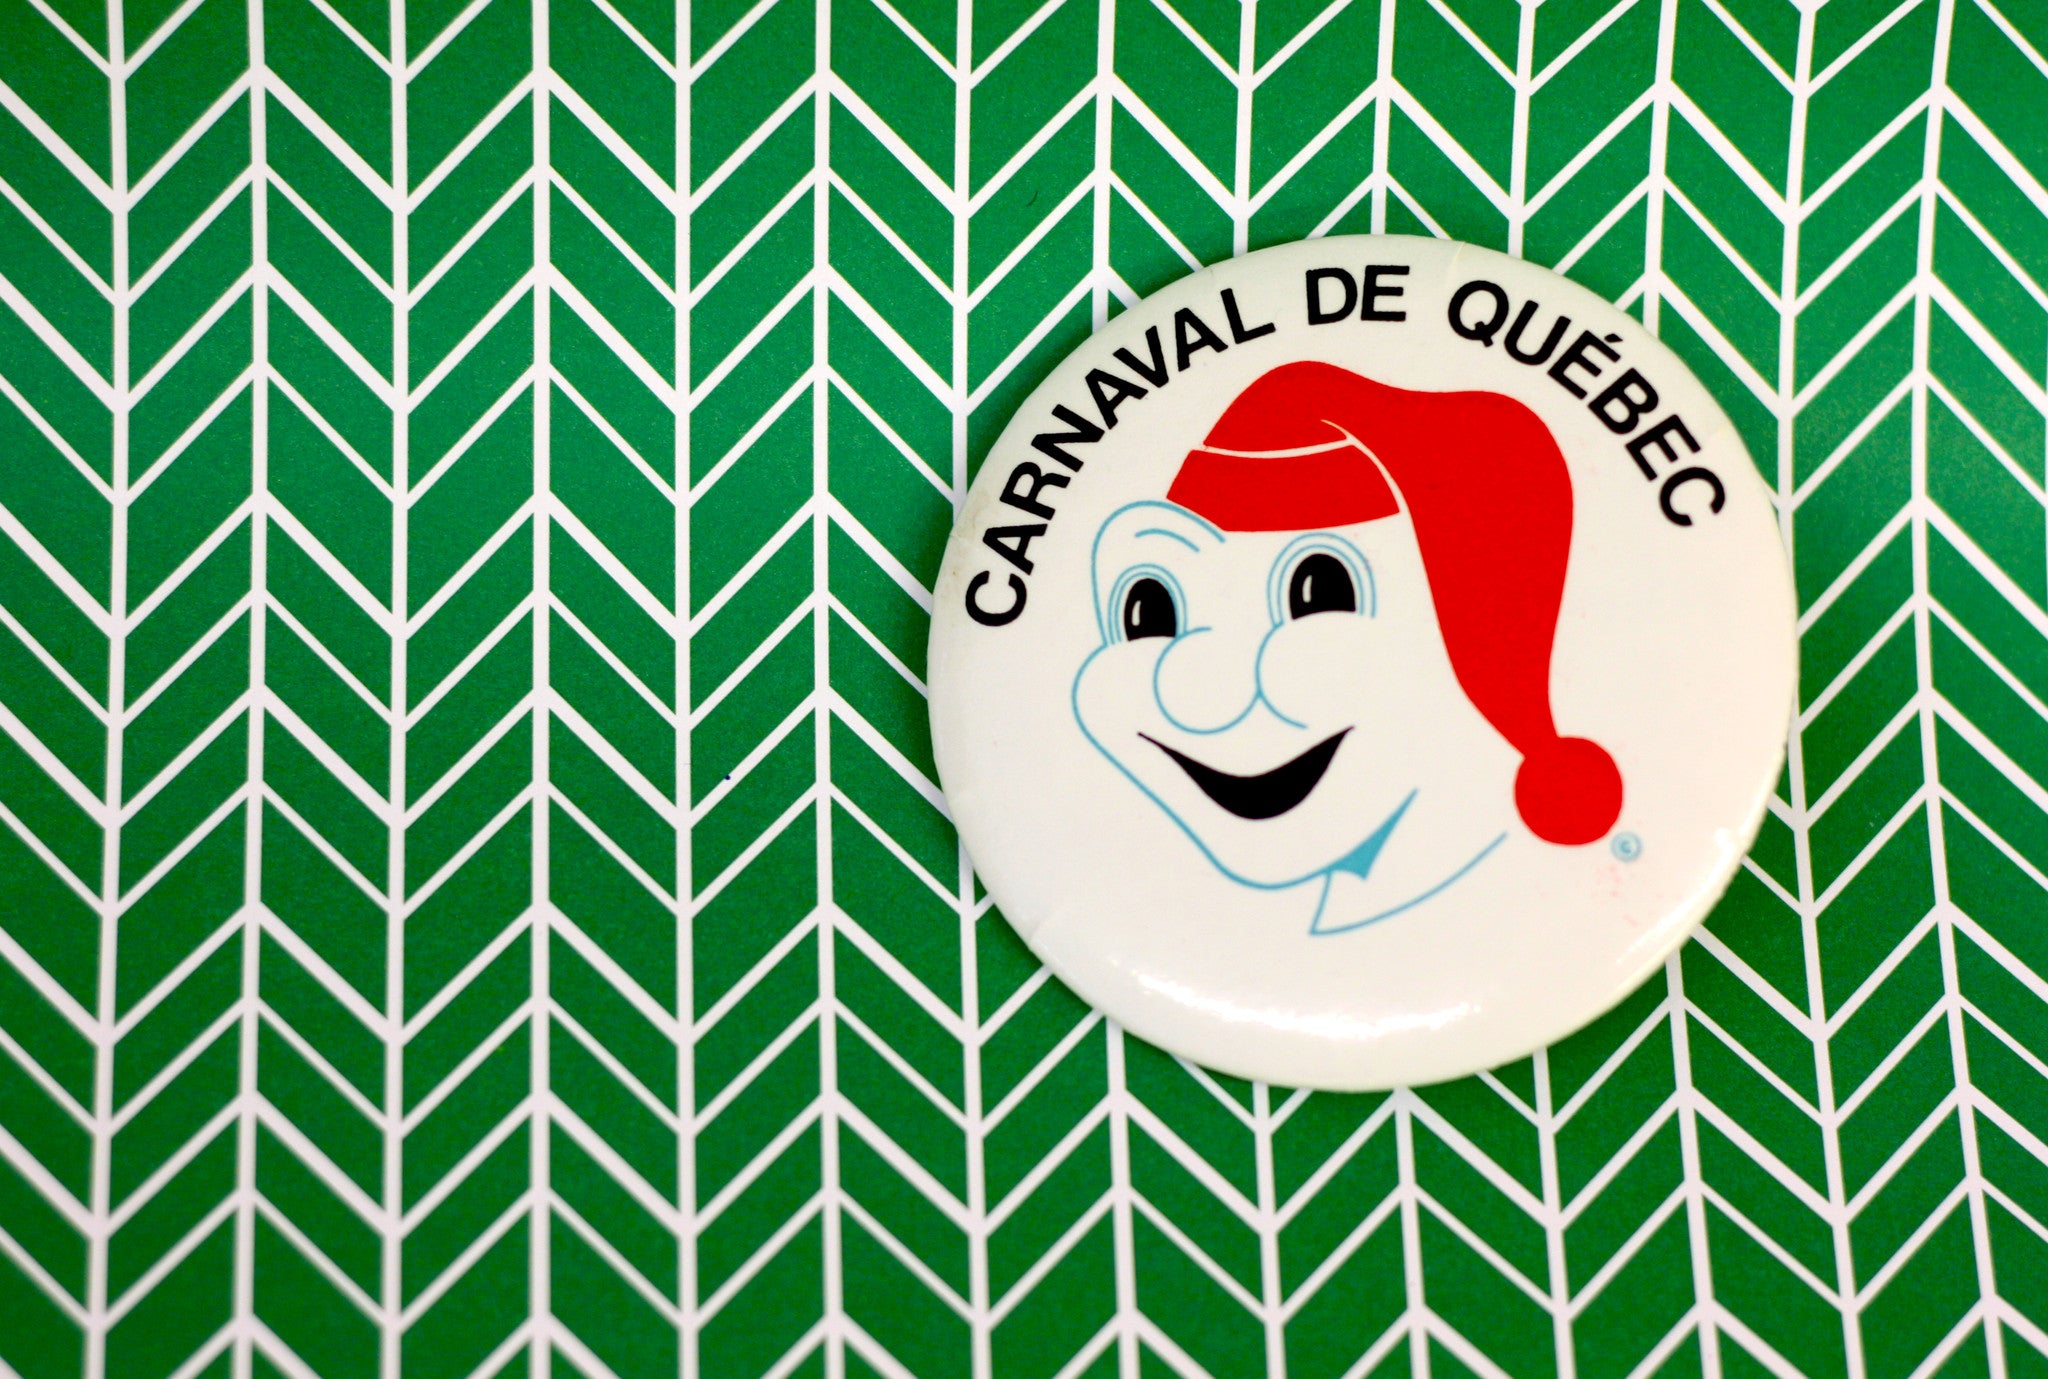 Vintage Button Archive, Canraval de Quebec Button, Bonhomme Carnaval